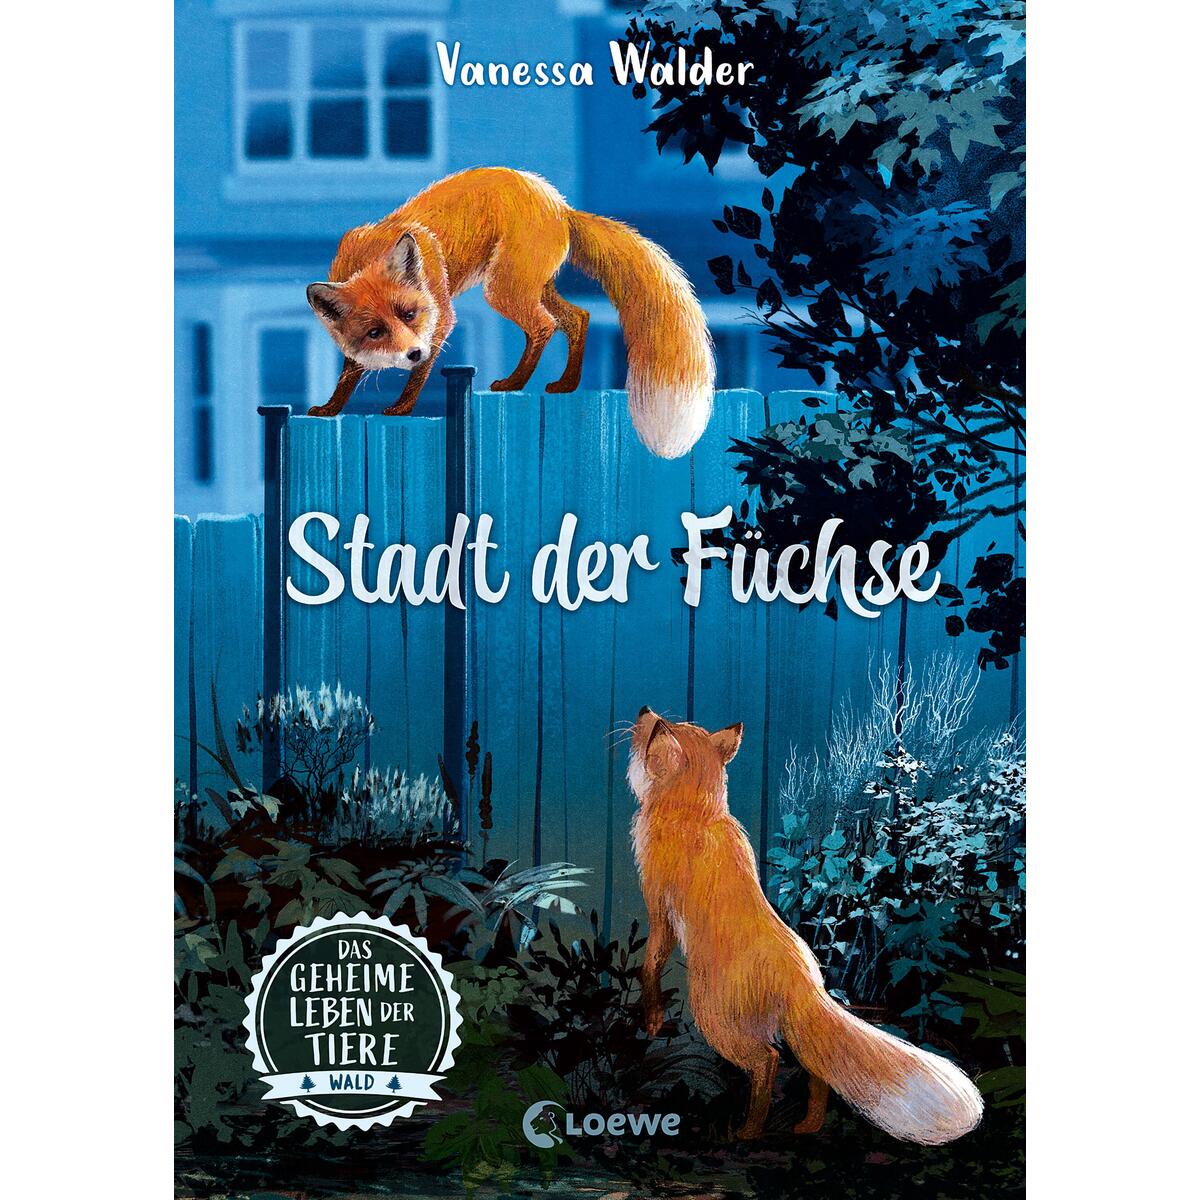 Das geheime Leben der Tiere (Wald) - Stadt der Füchse von Loewe Verlag GmbH